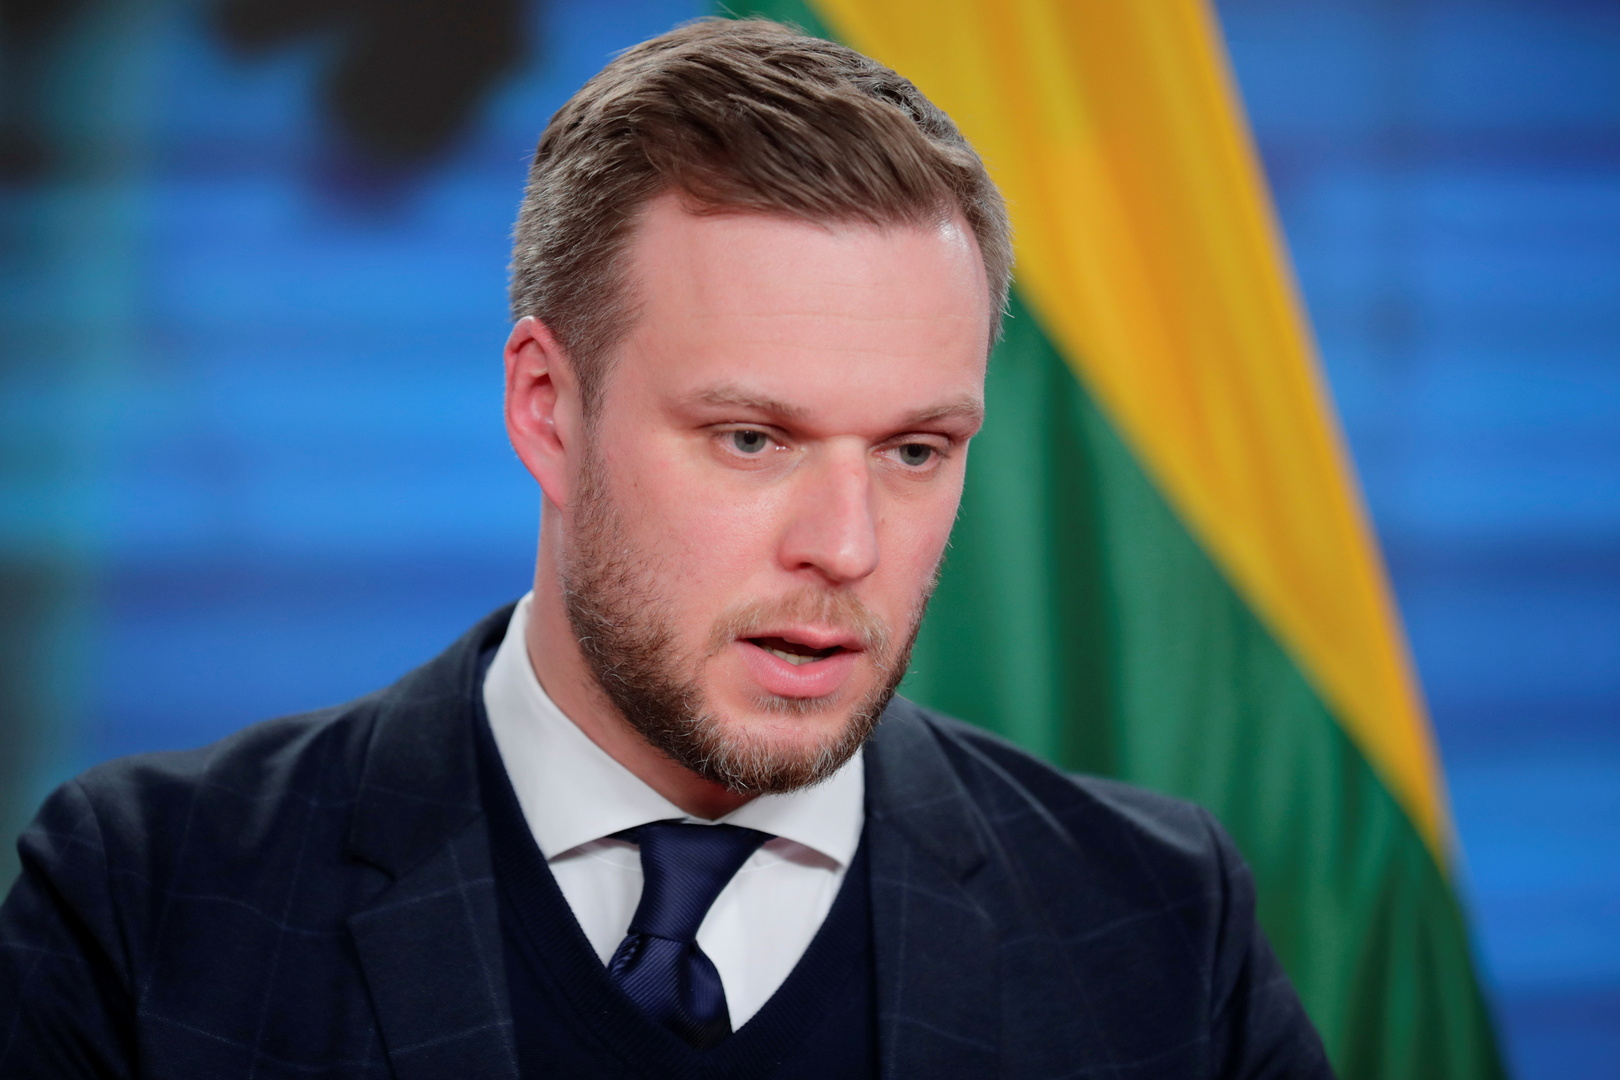 وزير خارجية ليتوانيا يوجه تحذيرا إلى المهاجرين من العراق وتركيا